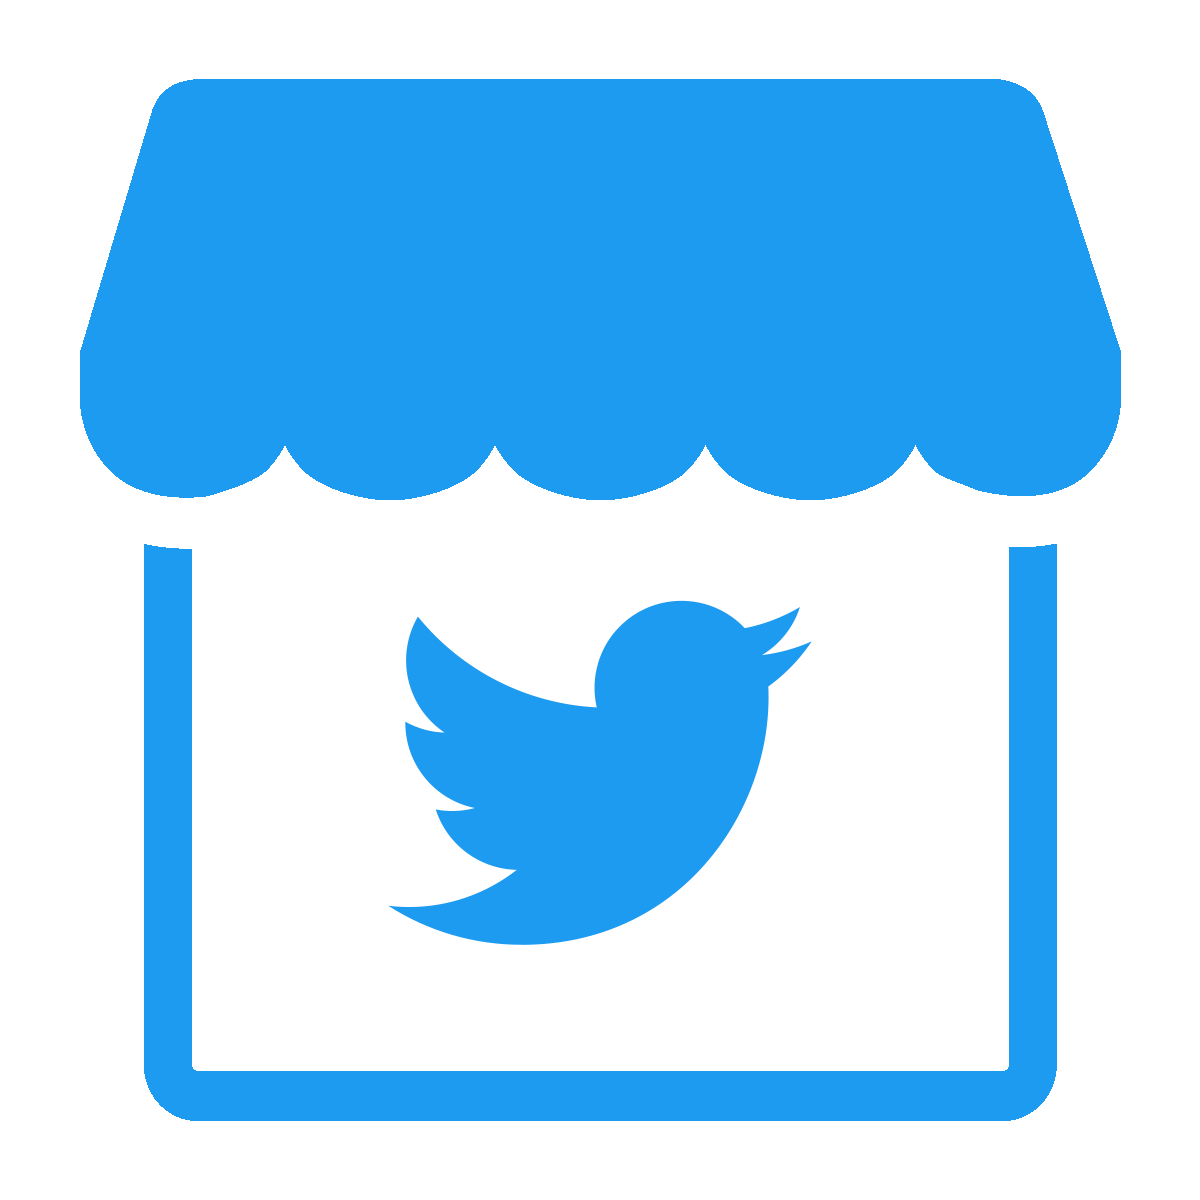 Chromore ‑ Twitter Shops Feed